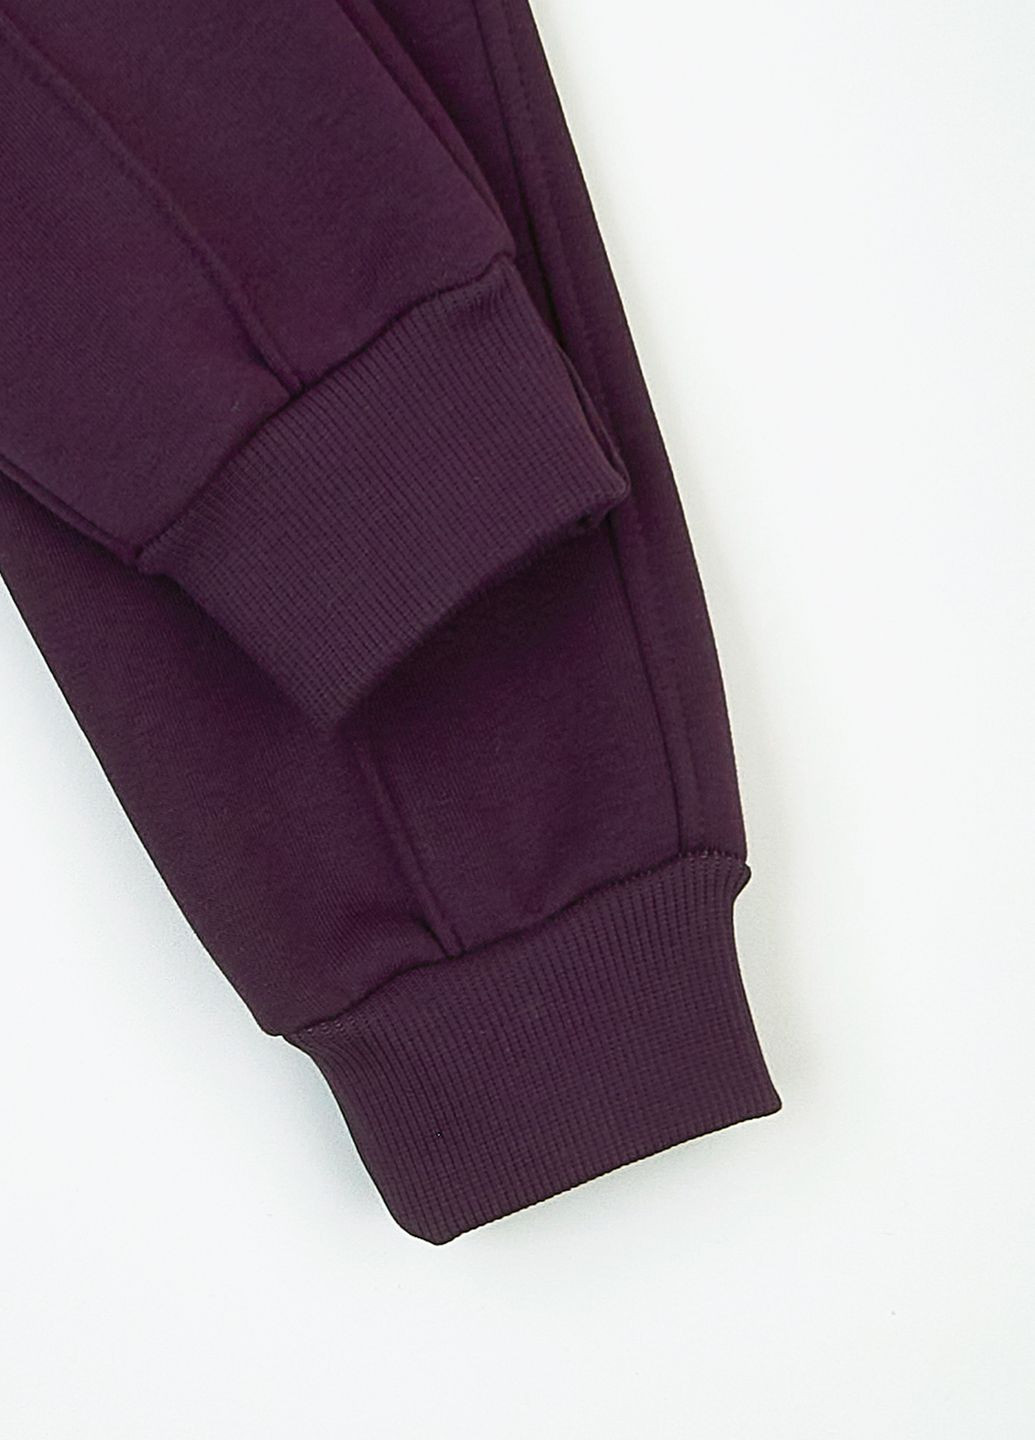 Фиолетовые спортивные демисезонные джоггеры брюки KRAKO